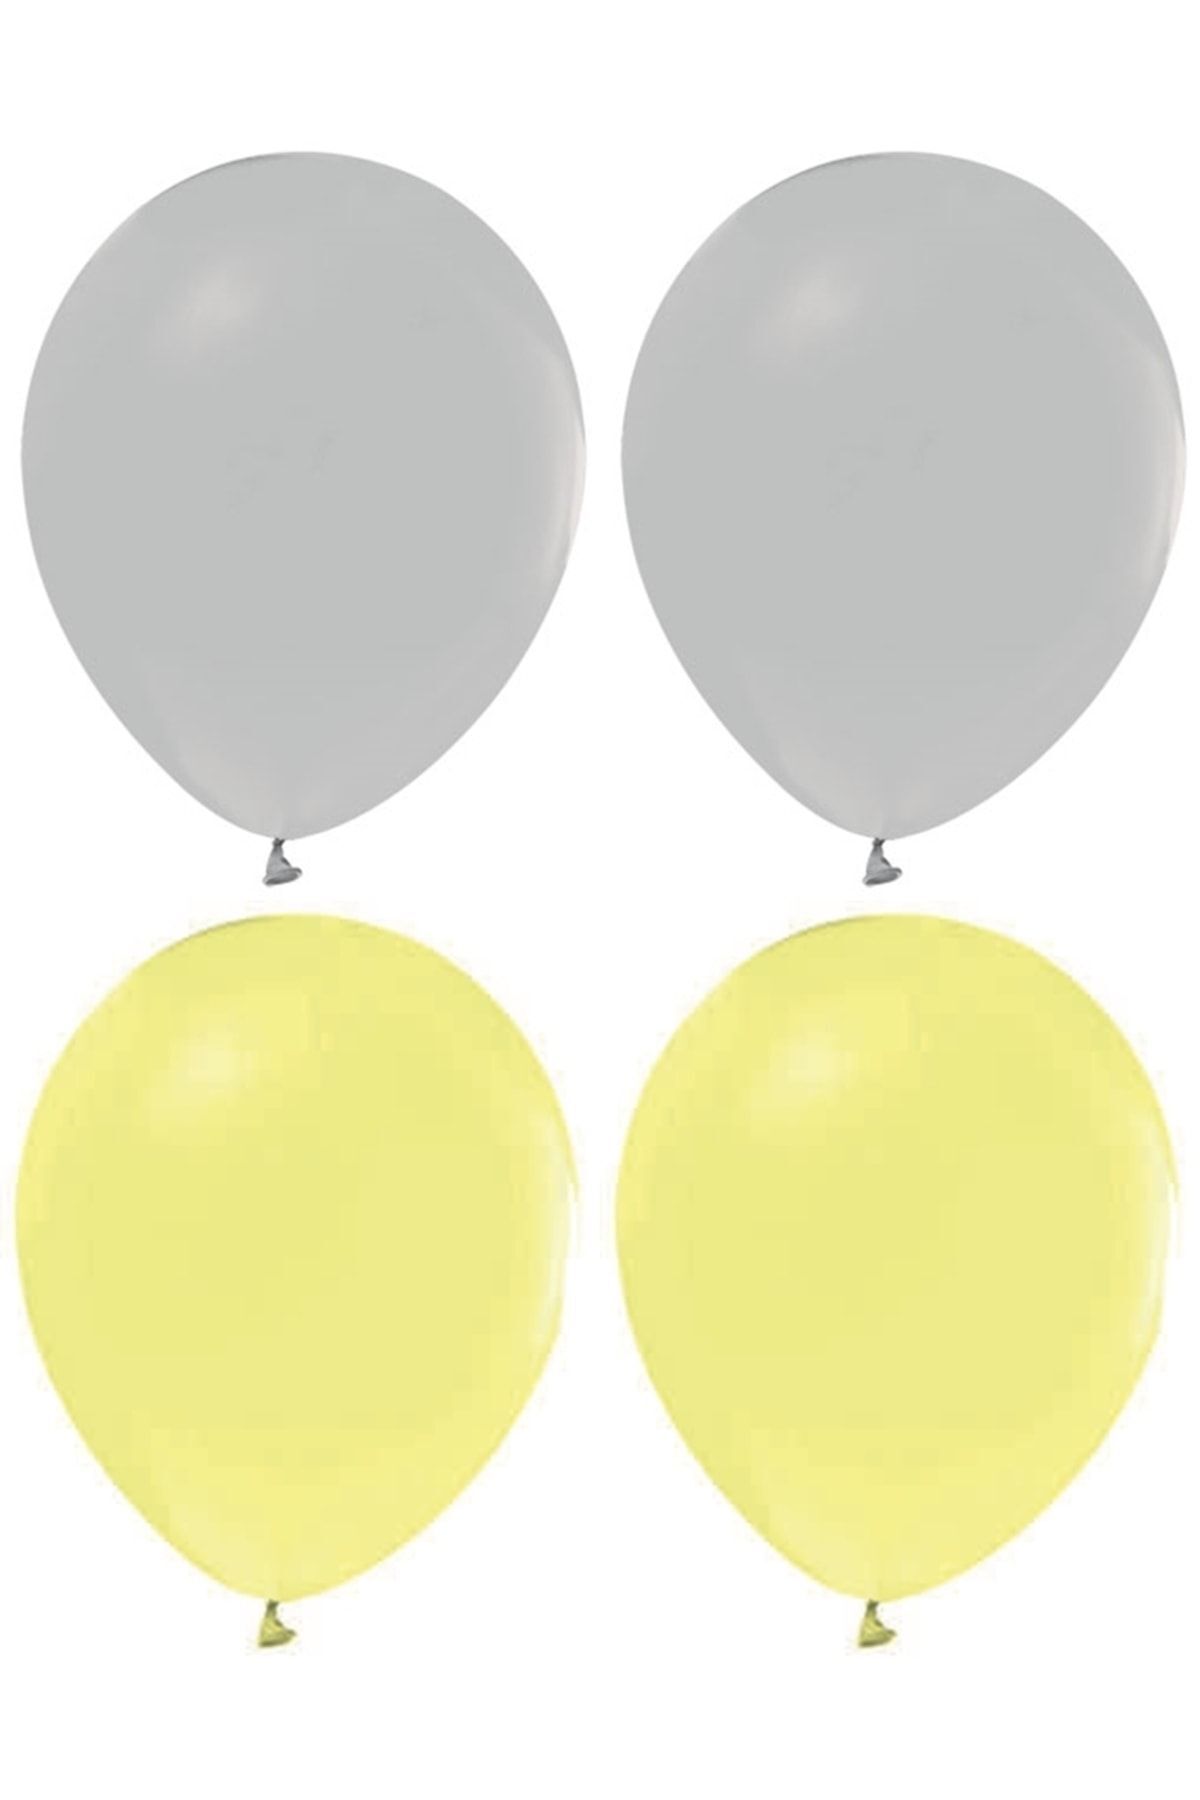 HKNYS Sarı Makaron Ve Gri Renk Karışık Lateks Pastel Balon 20 Adet